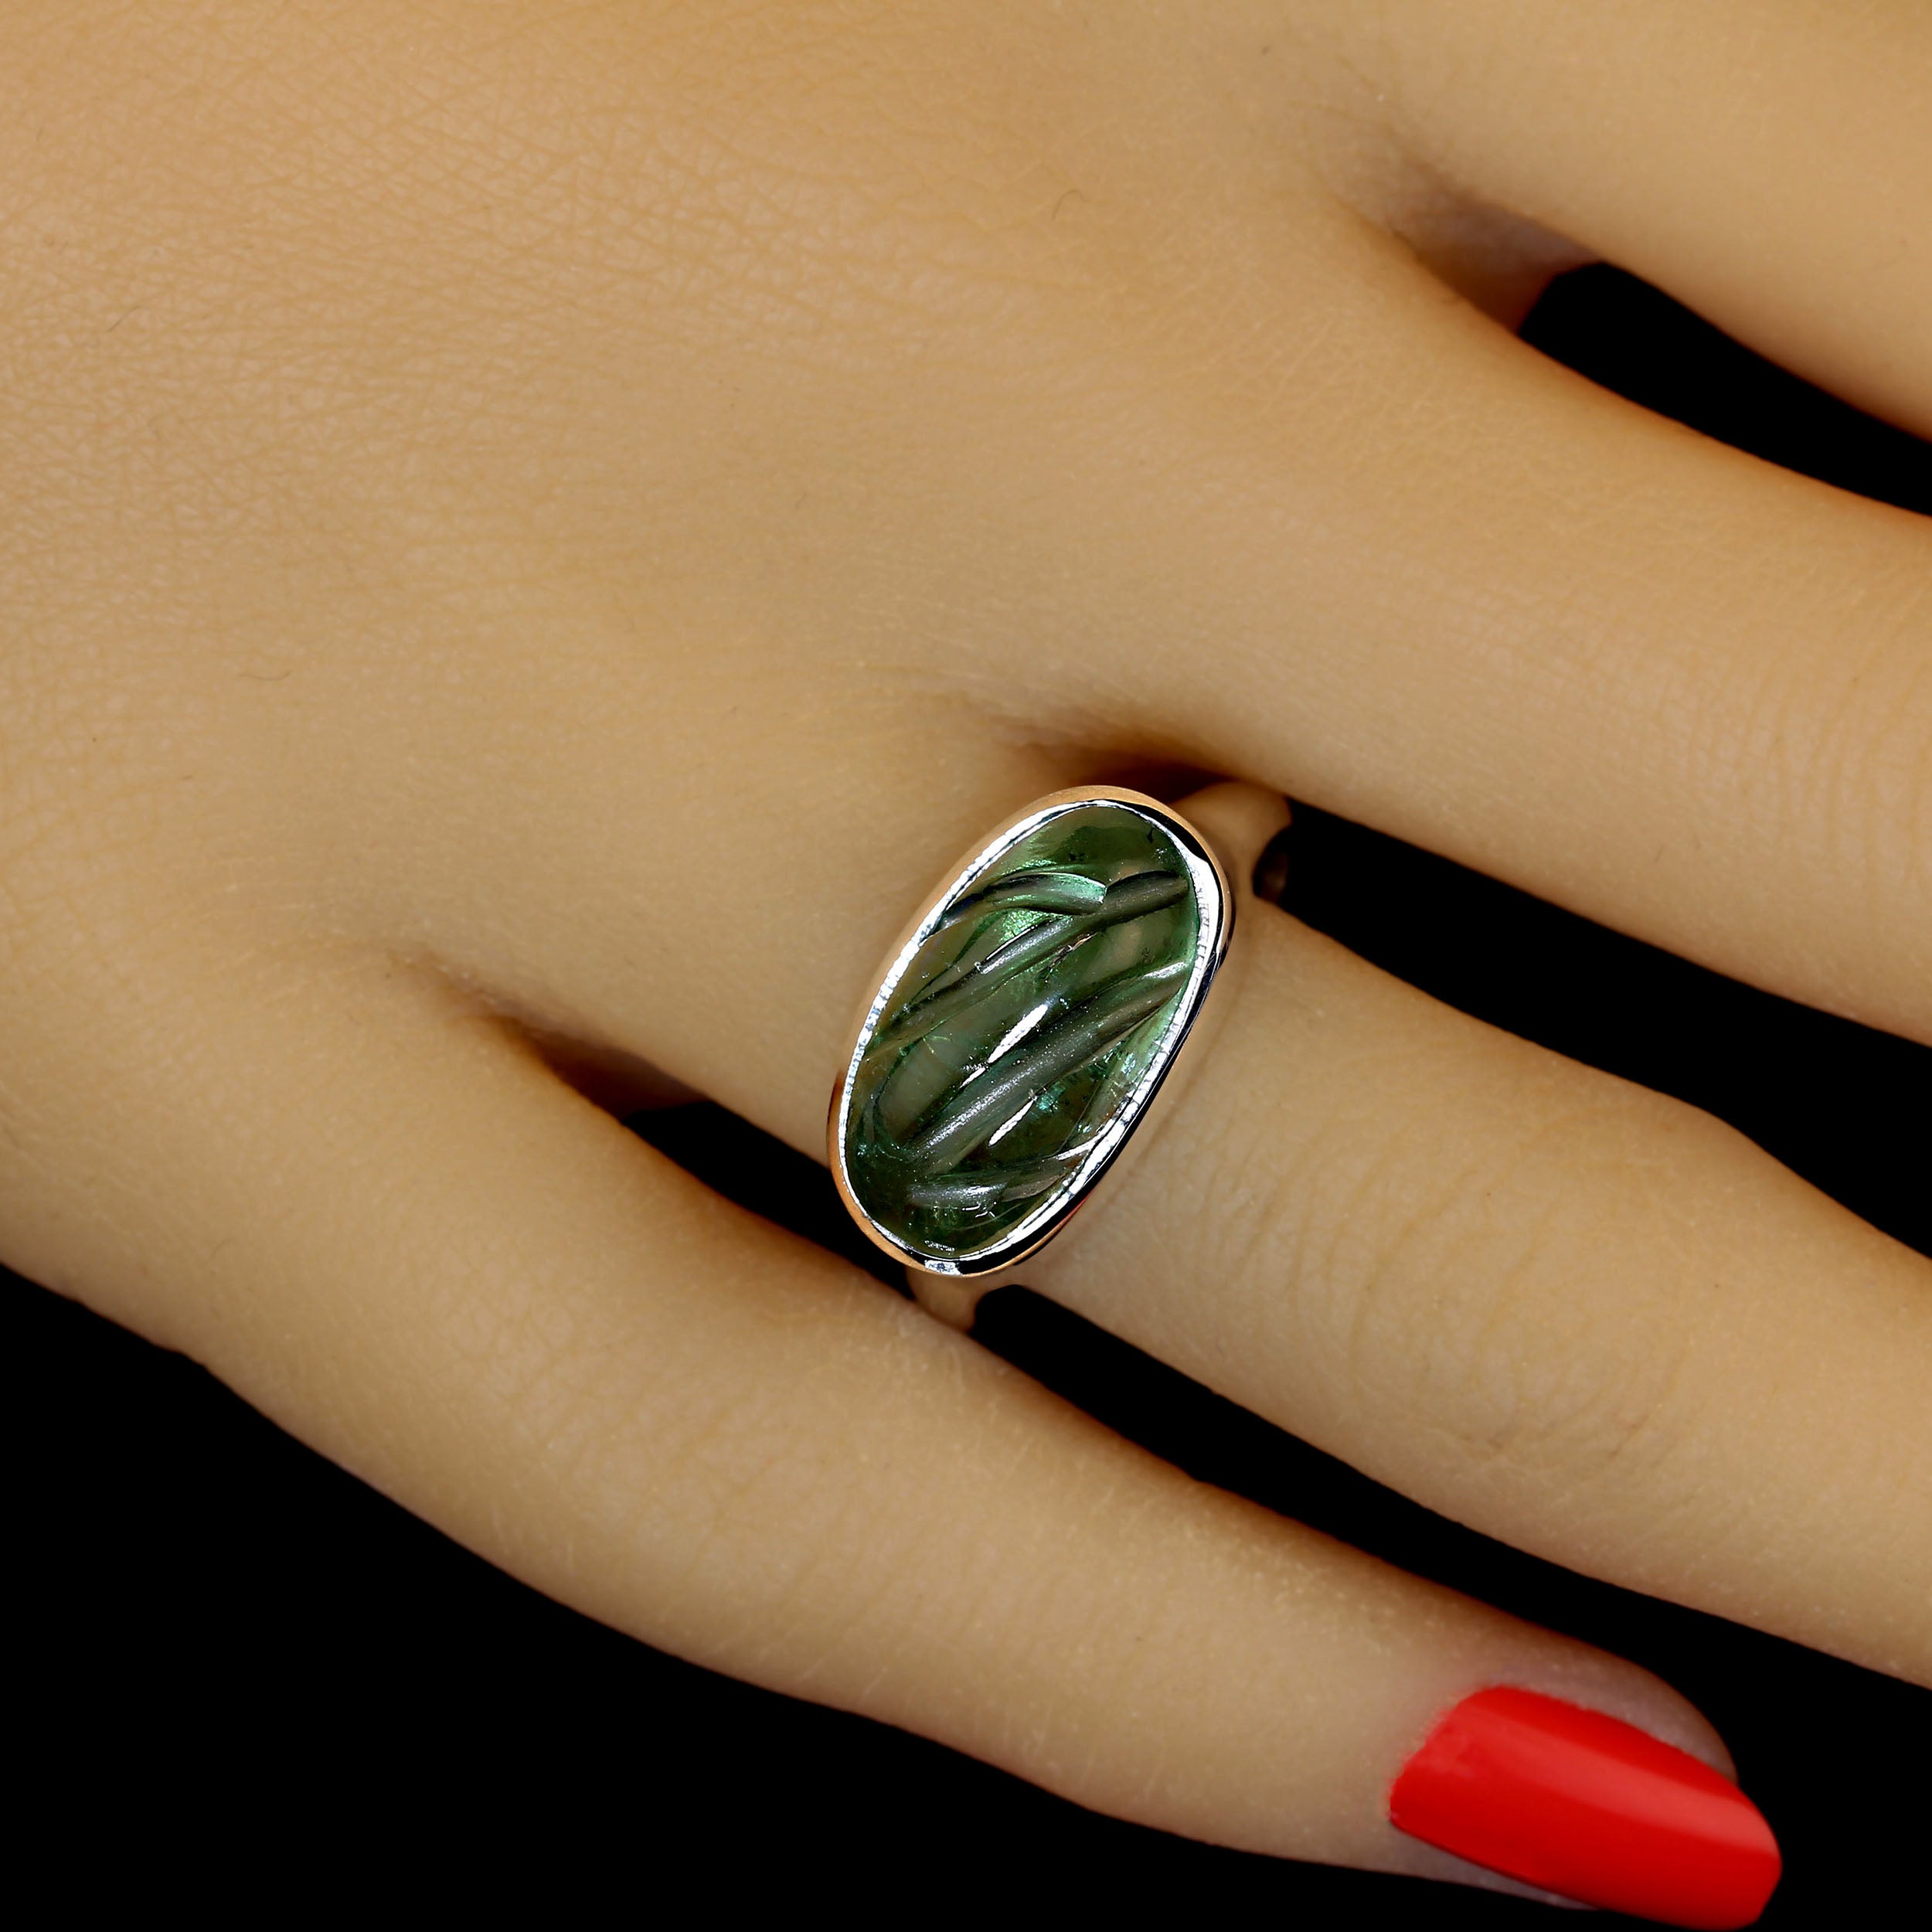 Einzigartiger, geschnitzter grüner Turmalin in einem maßgefertigten Sterling Silber Ring.  Die Ost-West-Fassung der Lünette ist wunderschön.  Das glatte Sterlingsilber liegt elegant in der Hand. Die Schönheit des Turmalins und sein breites Spektrum